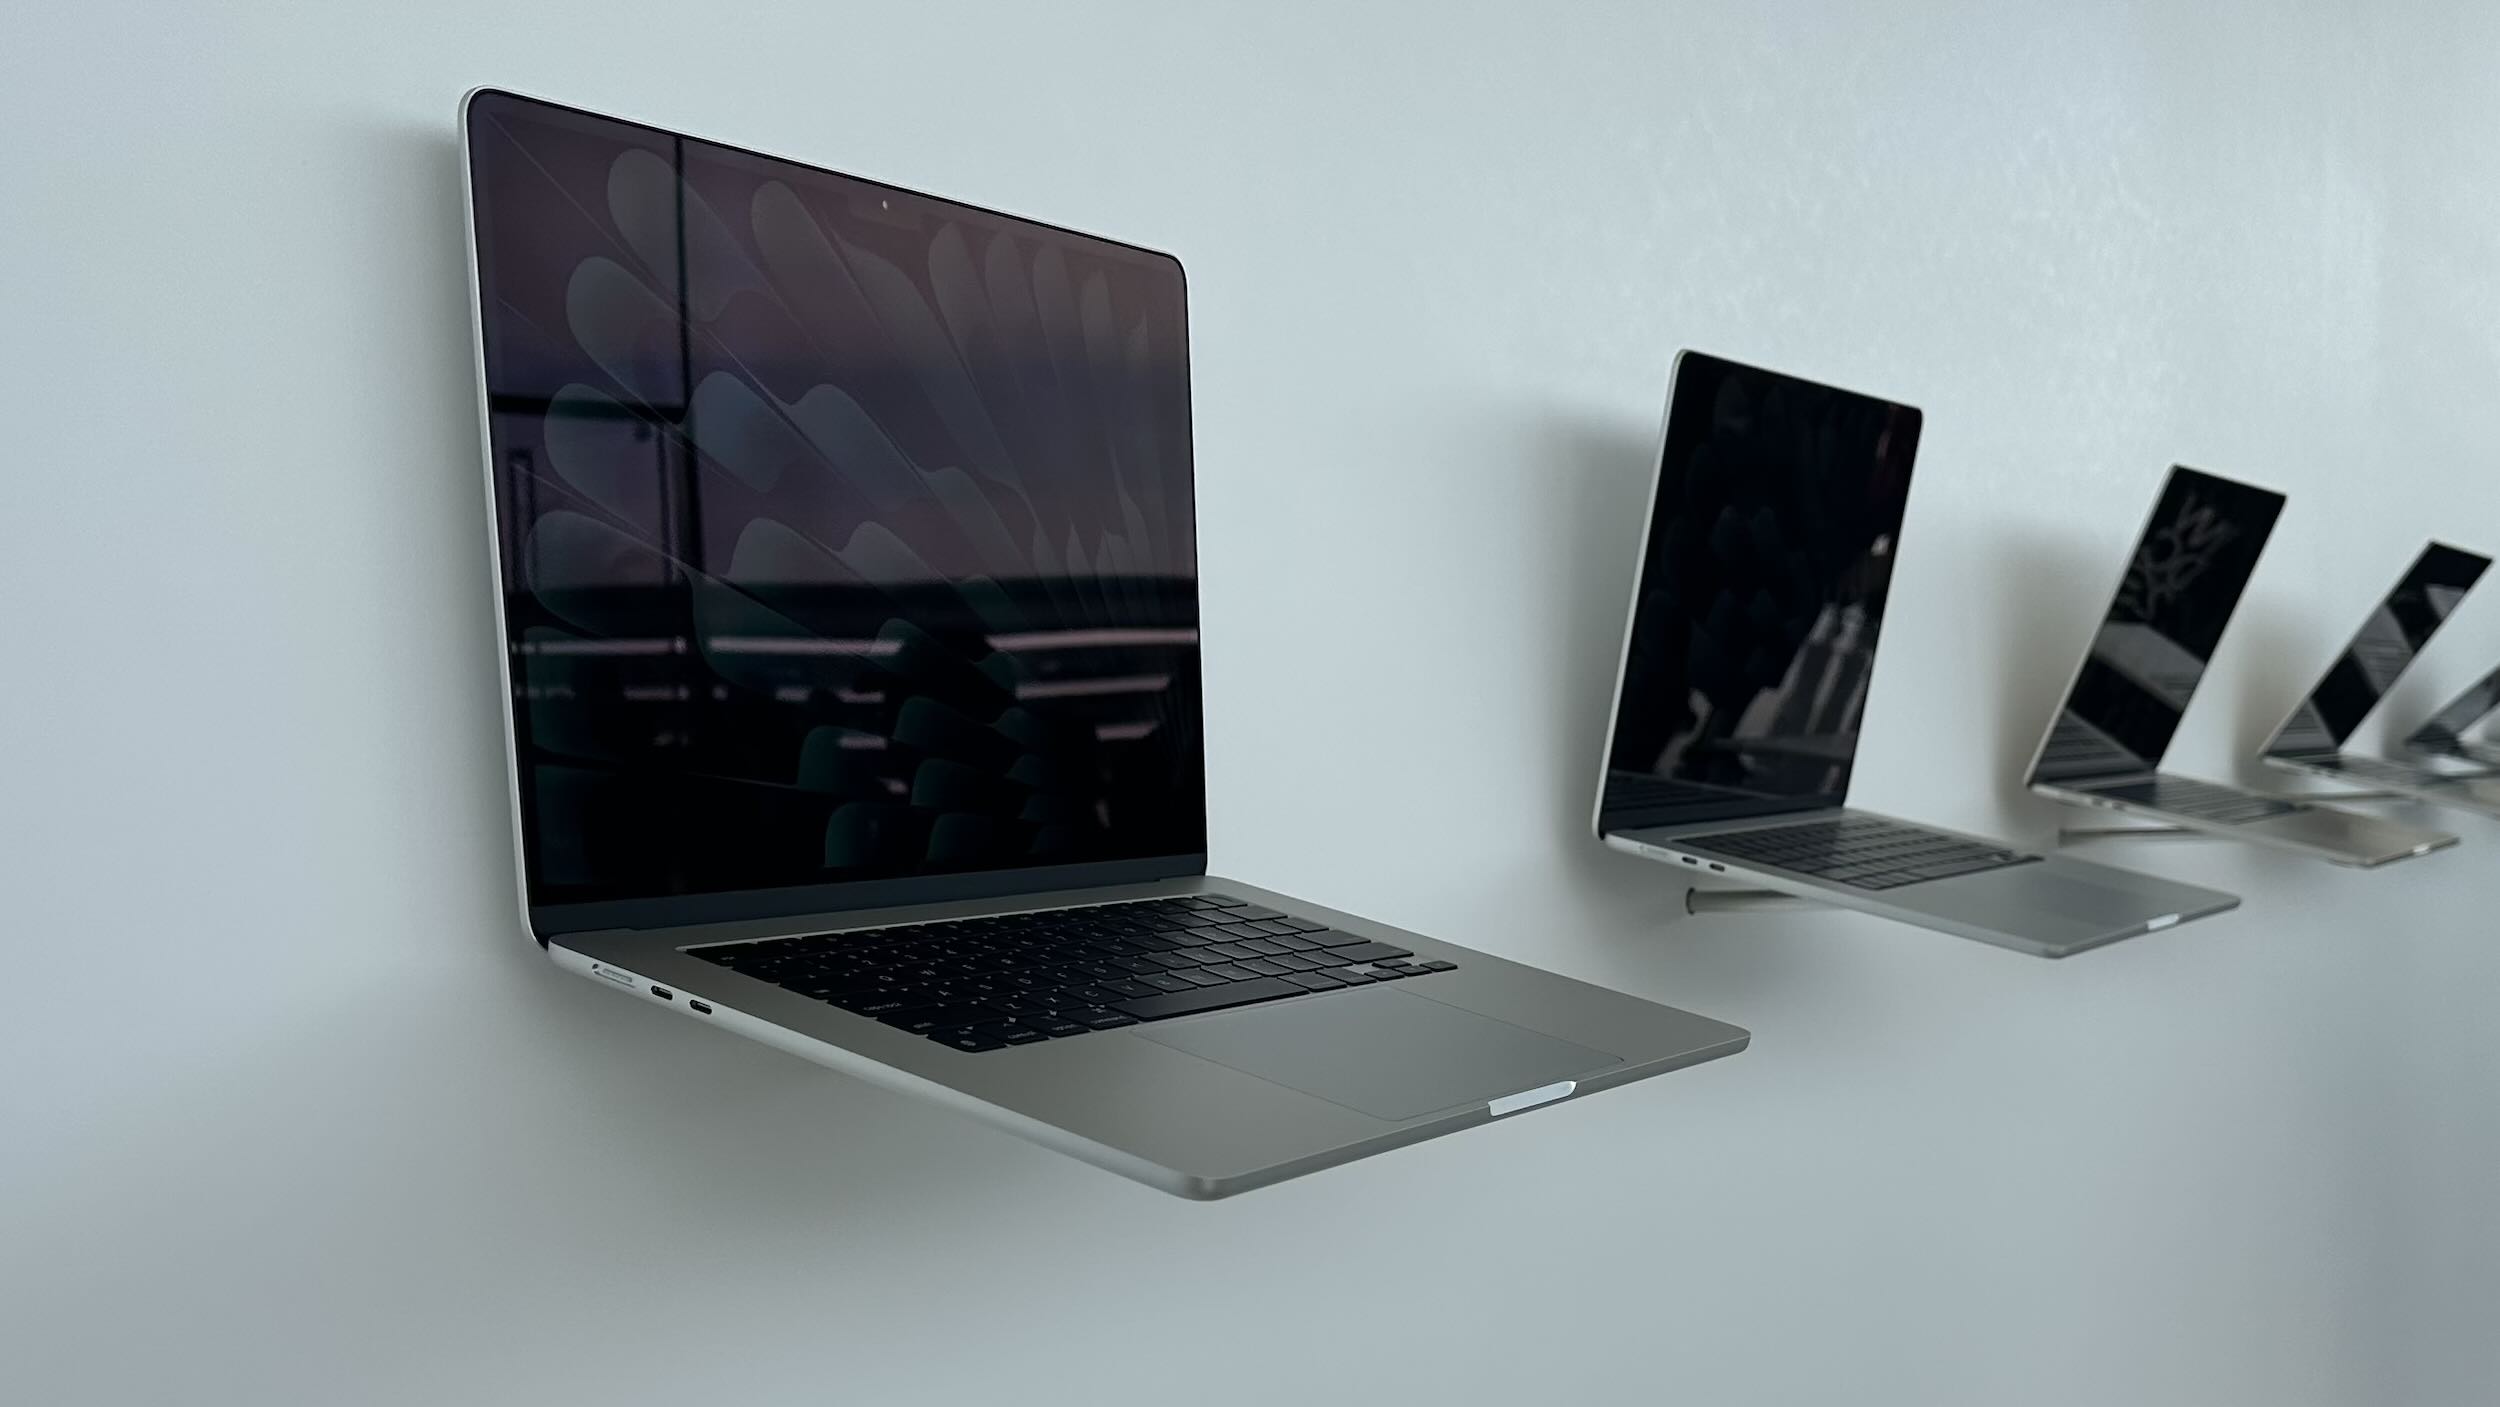 The M1 Mac mini and MacBook Air: A Giant Leap Forward for All Mac